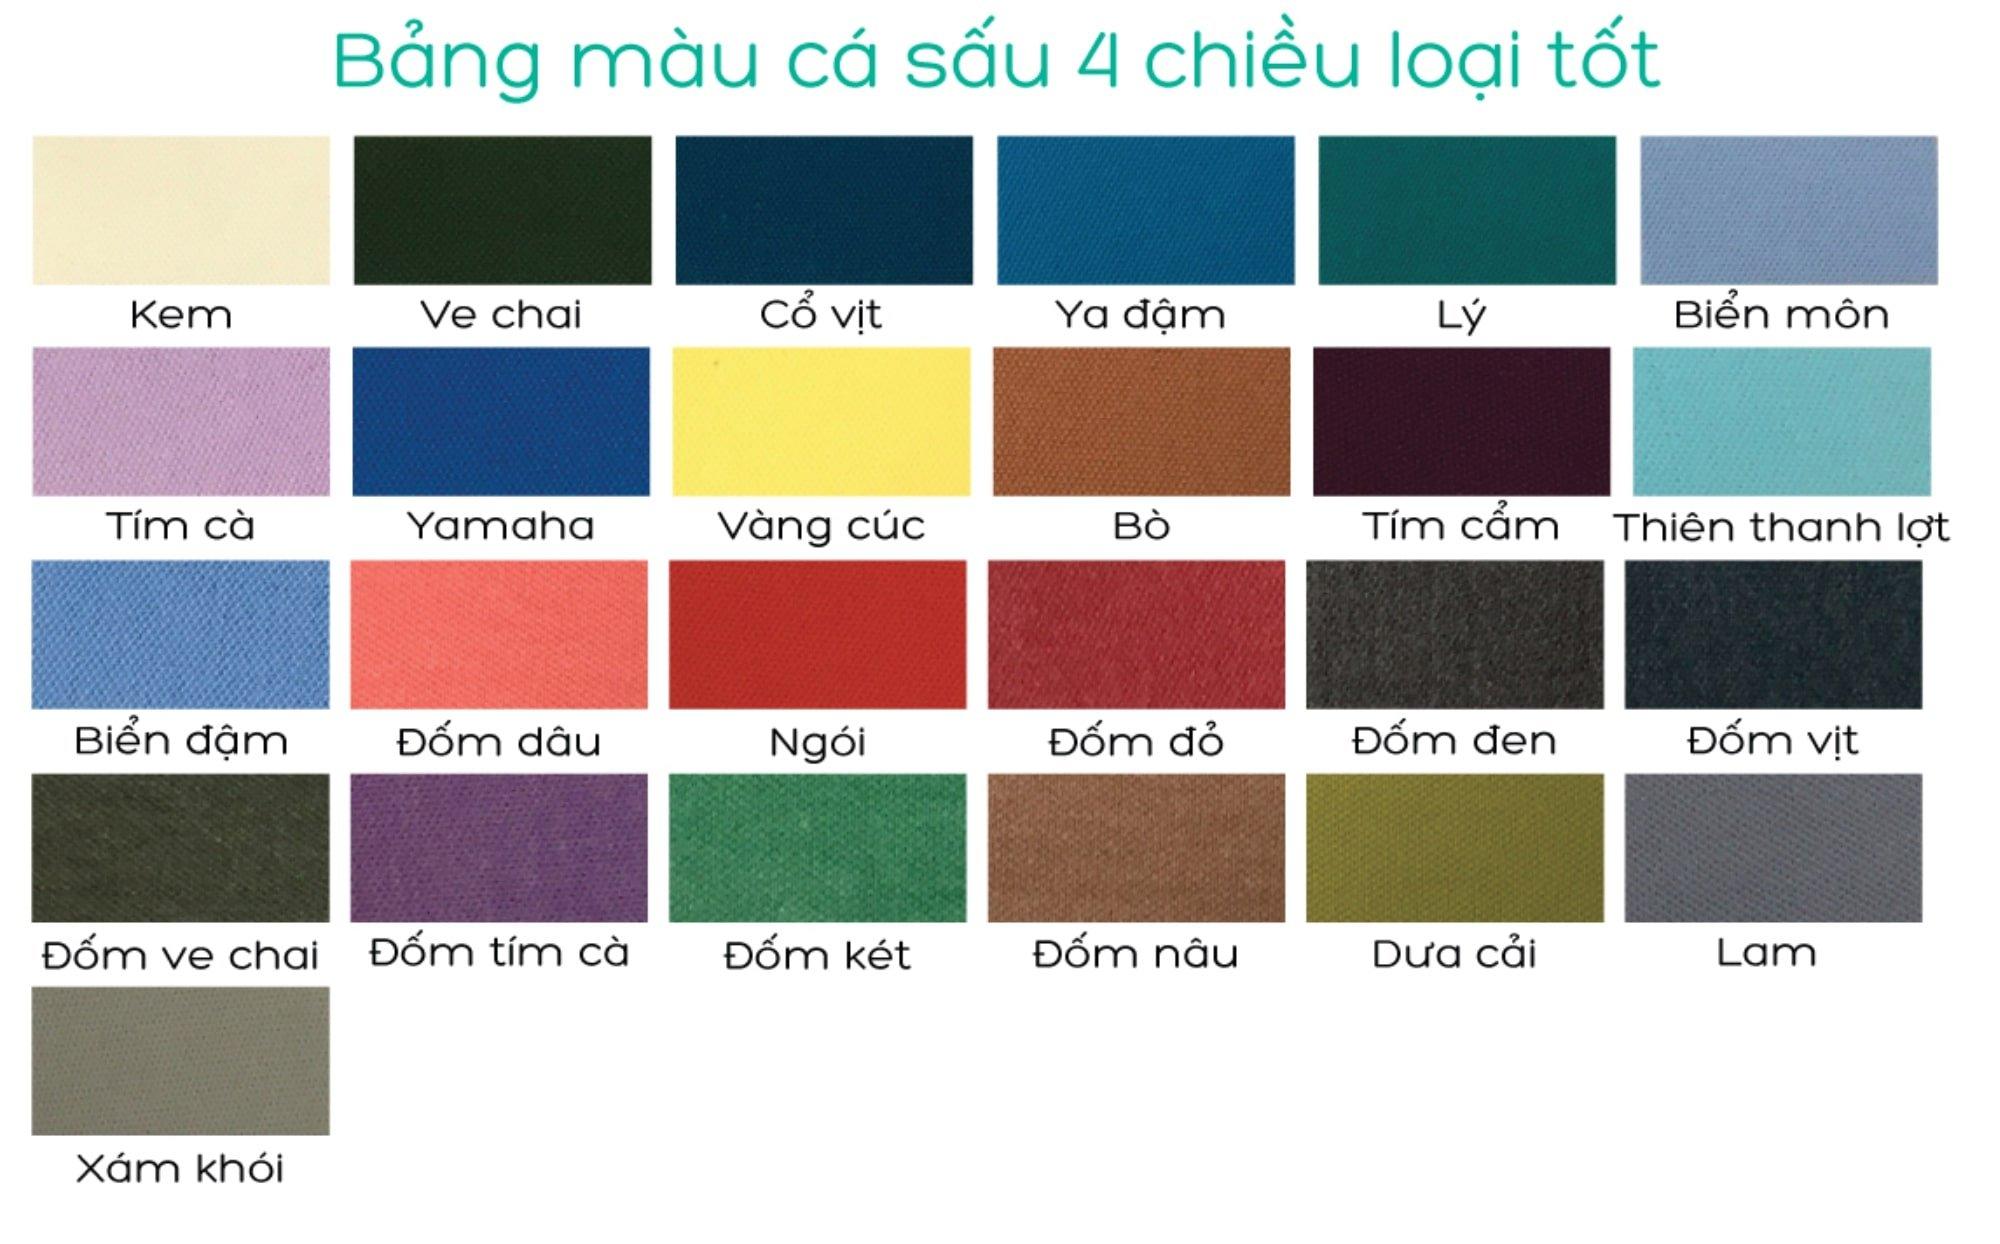 Bảng màu của PRINTSTYLE Hồ Chí Minh (Ảnh BlogAnChoi)